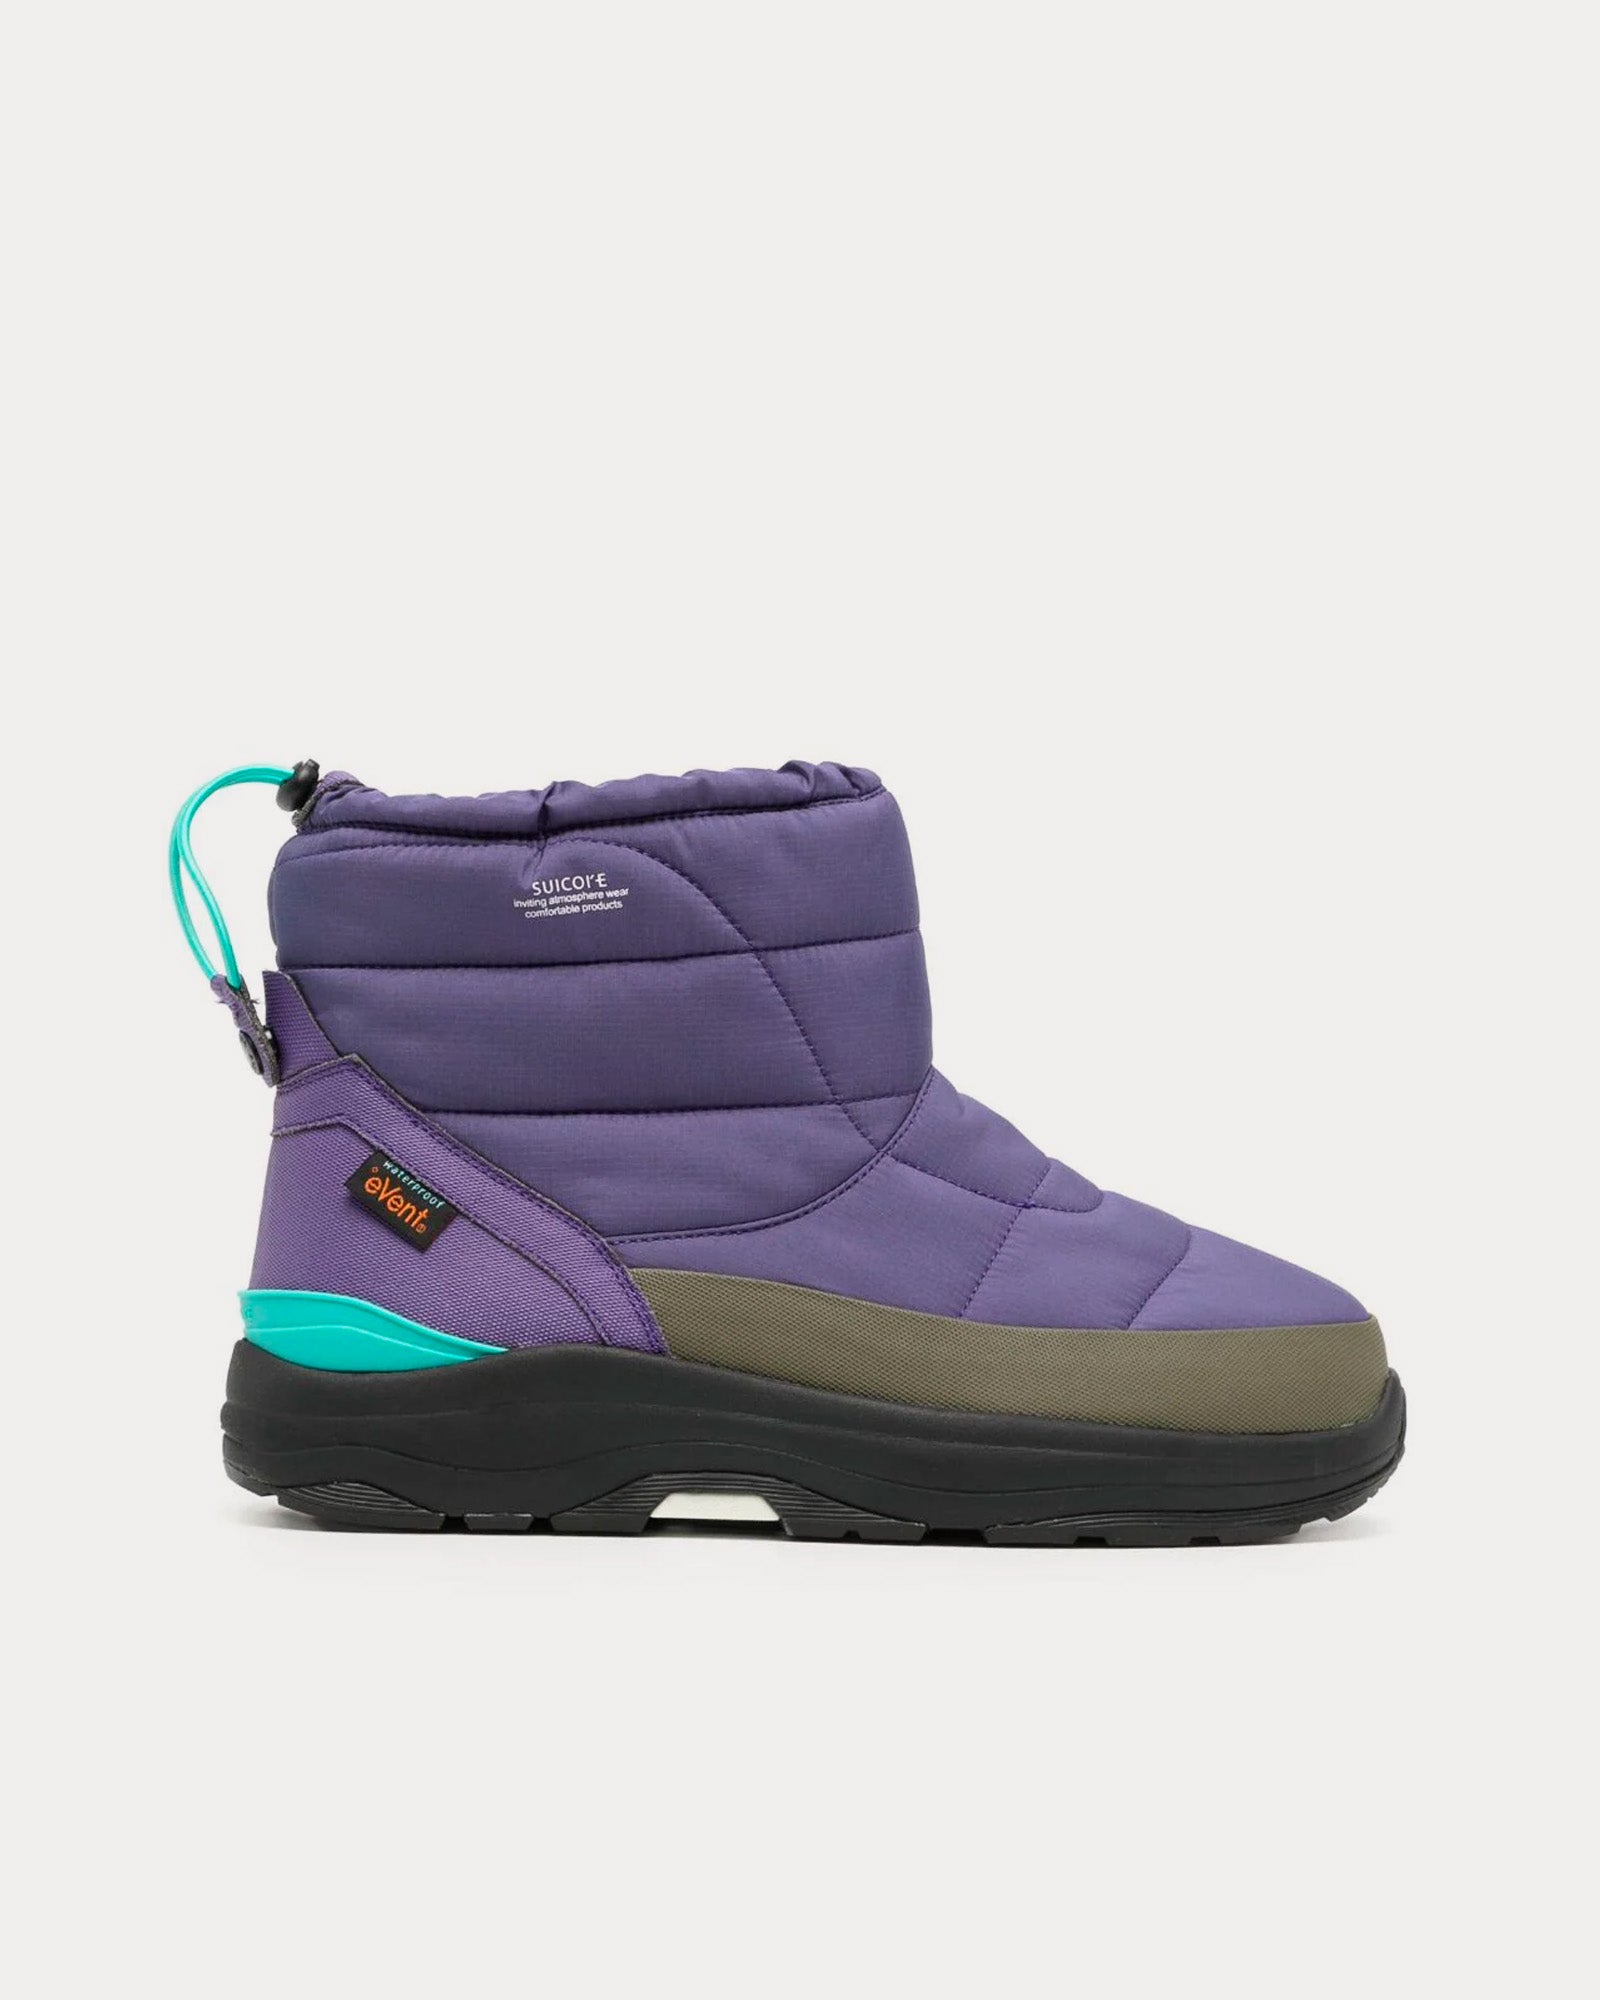 Suicoke - BOWER-evab Lavender Purple / Black Snow Boots